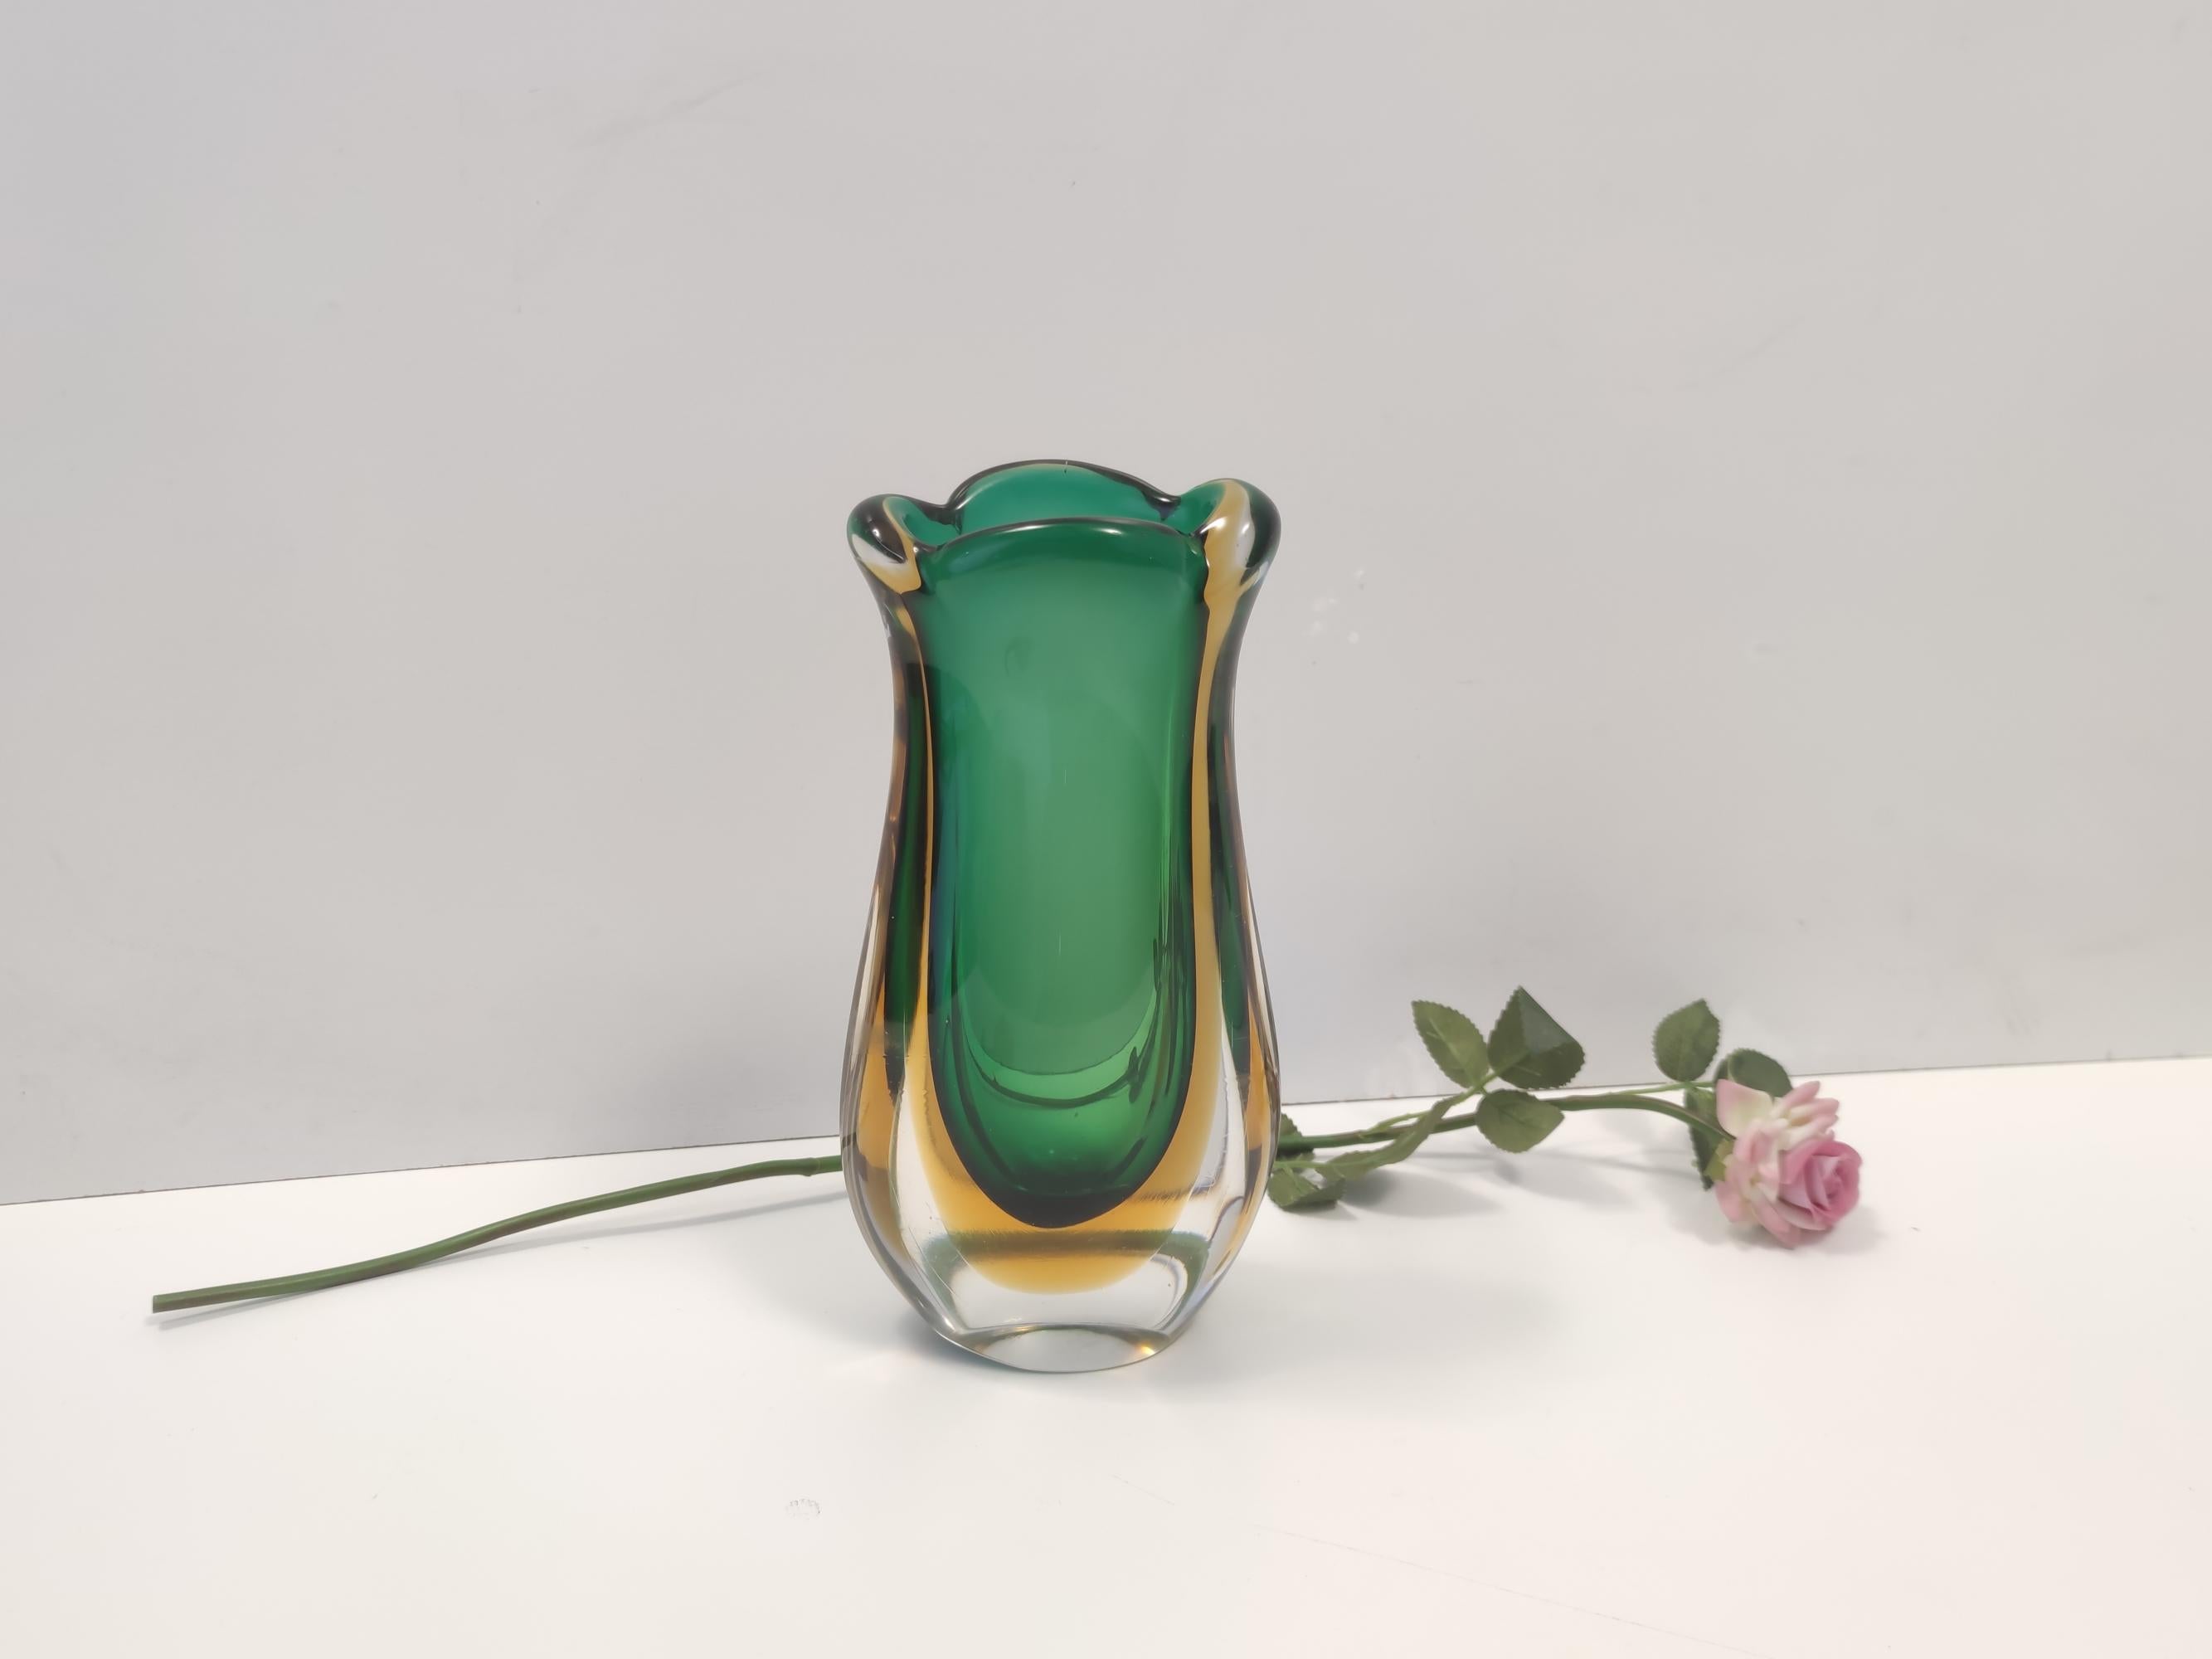 Fabriqué en Italie, années 1950 - 1960. 
Ce vase est fabriqué en verre de Murano Sommerso, qui a été soufflé à la main avec trois couleurs différentes : transparent, jaune et vert.
Il s'agit d'un article vintage, qui peut donc présenter de légères